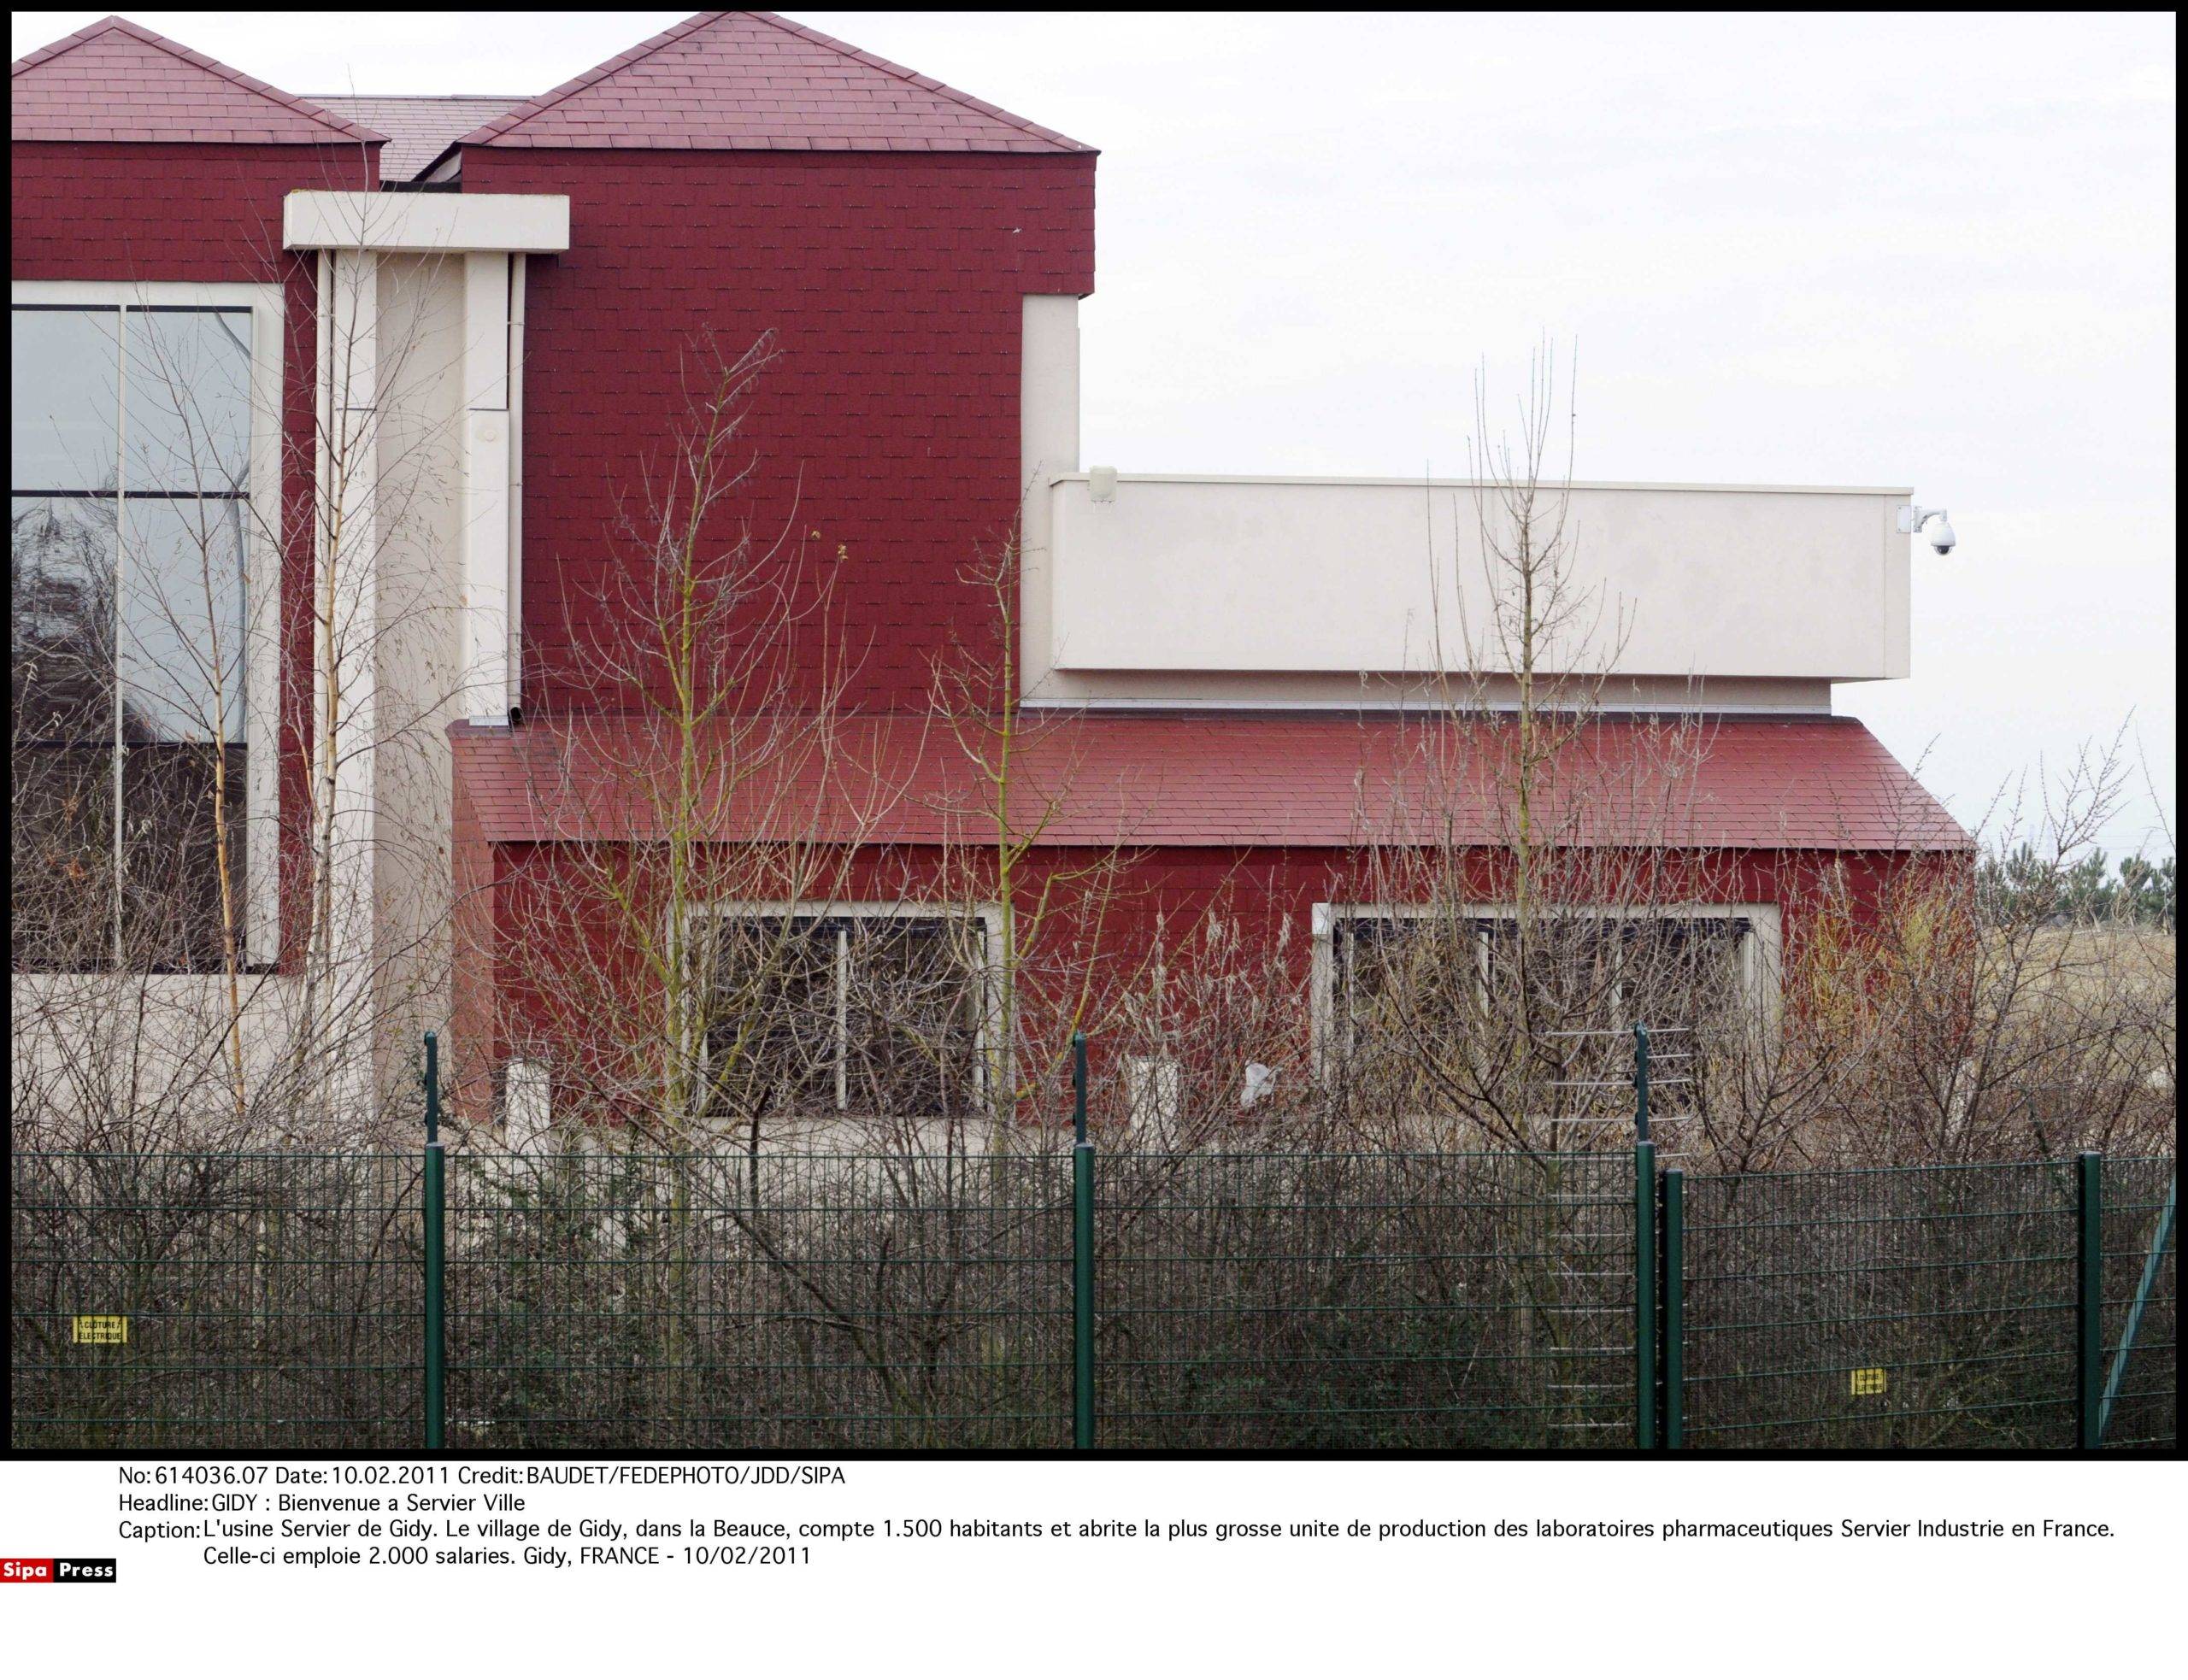 L'usine Servier de Gidy. Le village de Gidy, dans la Beauce, compte 1.500 habitants et abrite la plus grosse unite de production des laboratoires pharmaceutiques Servier Industrie en France. Celle-ci emploie 2.000 salaries. Gidy, FRANCE - 10/02/2011/Credit:BAUDET/JDD/SIPA/1102141427